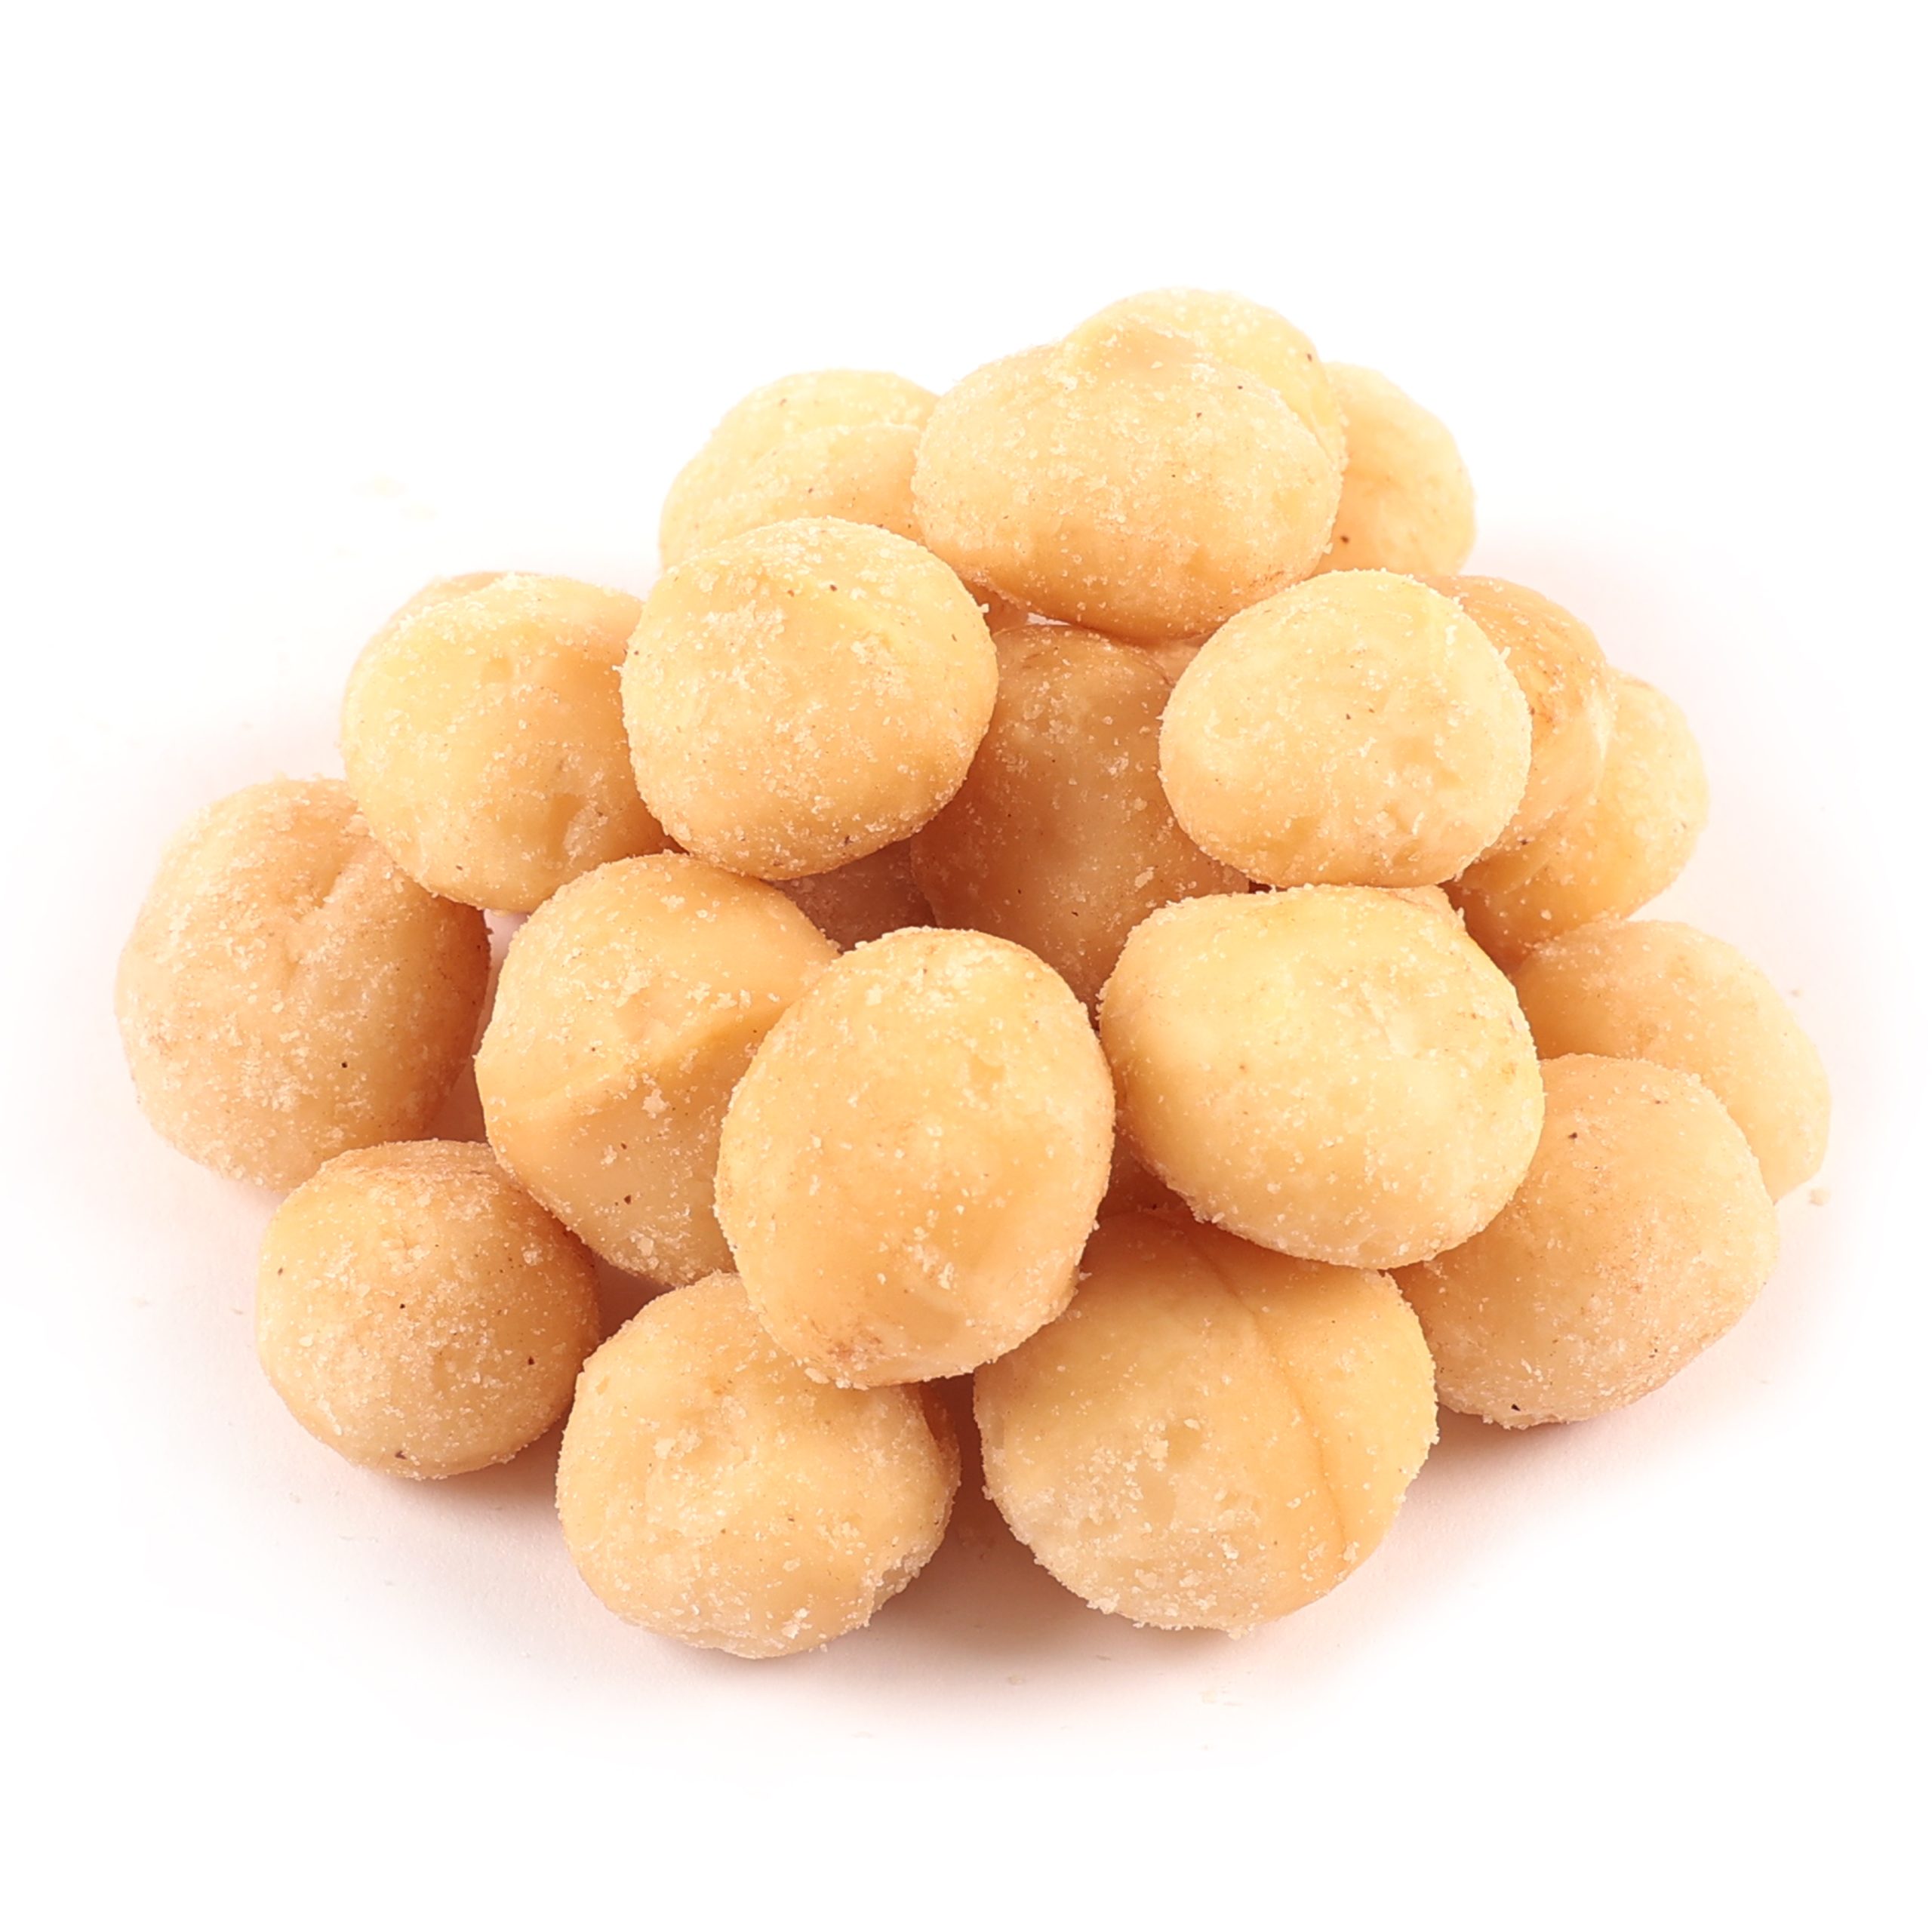 Dorri - Roasted and Salted Macadamia Nuts